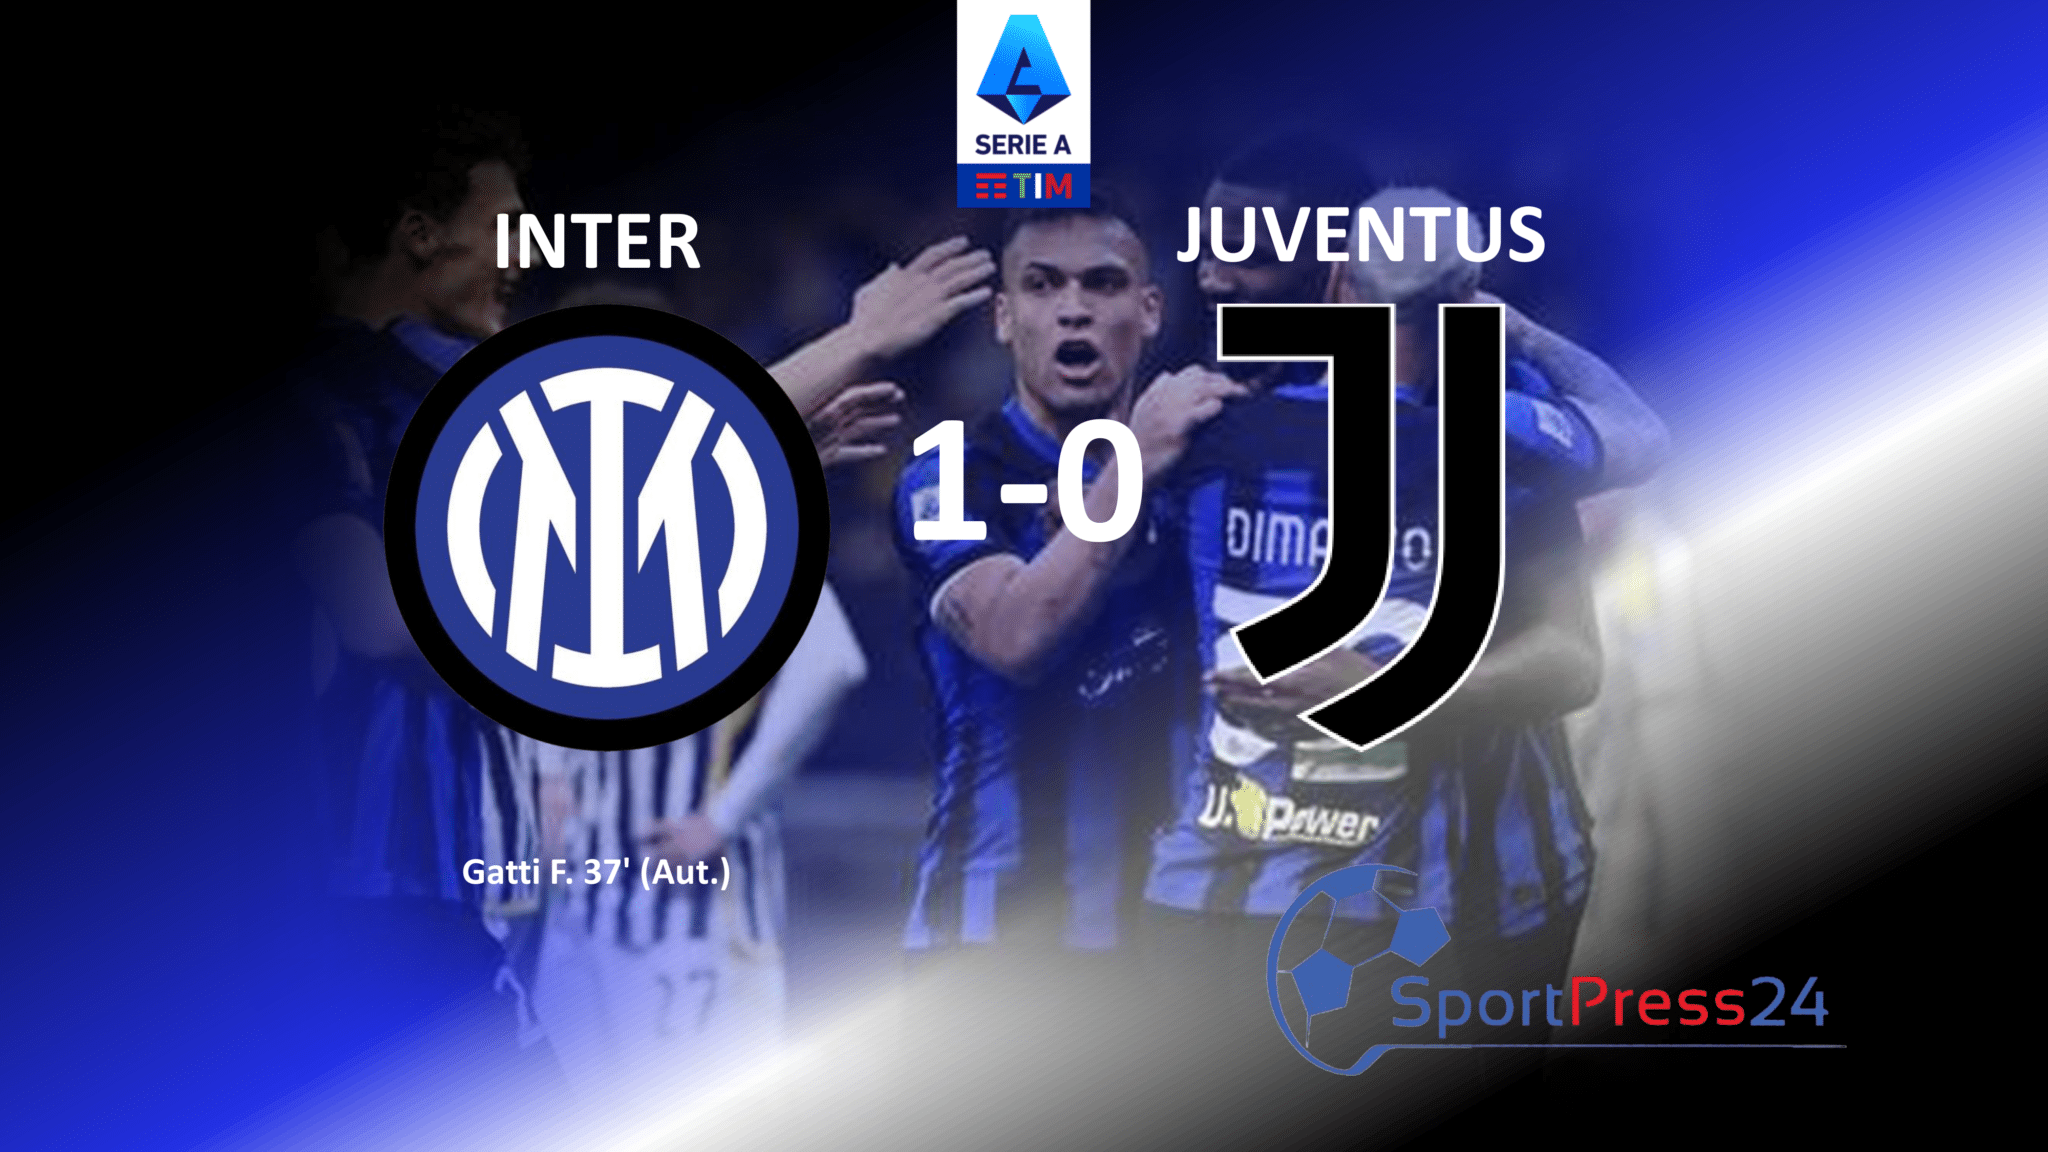 Inarrestabile Inter batte 1-0 la Juventus : le pagelle (Immagine a cura di Valerio Giuseppe Bellinghieri)